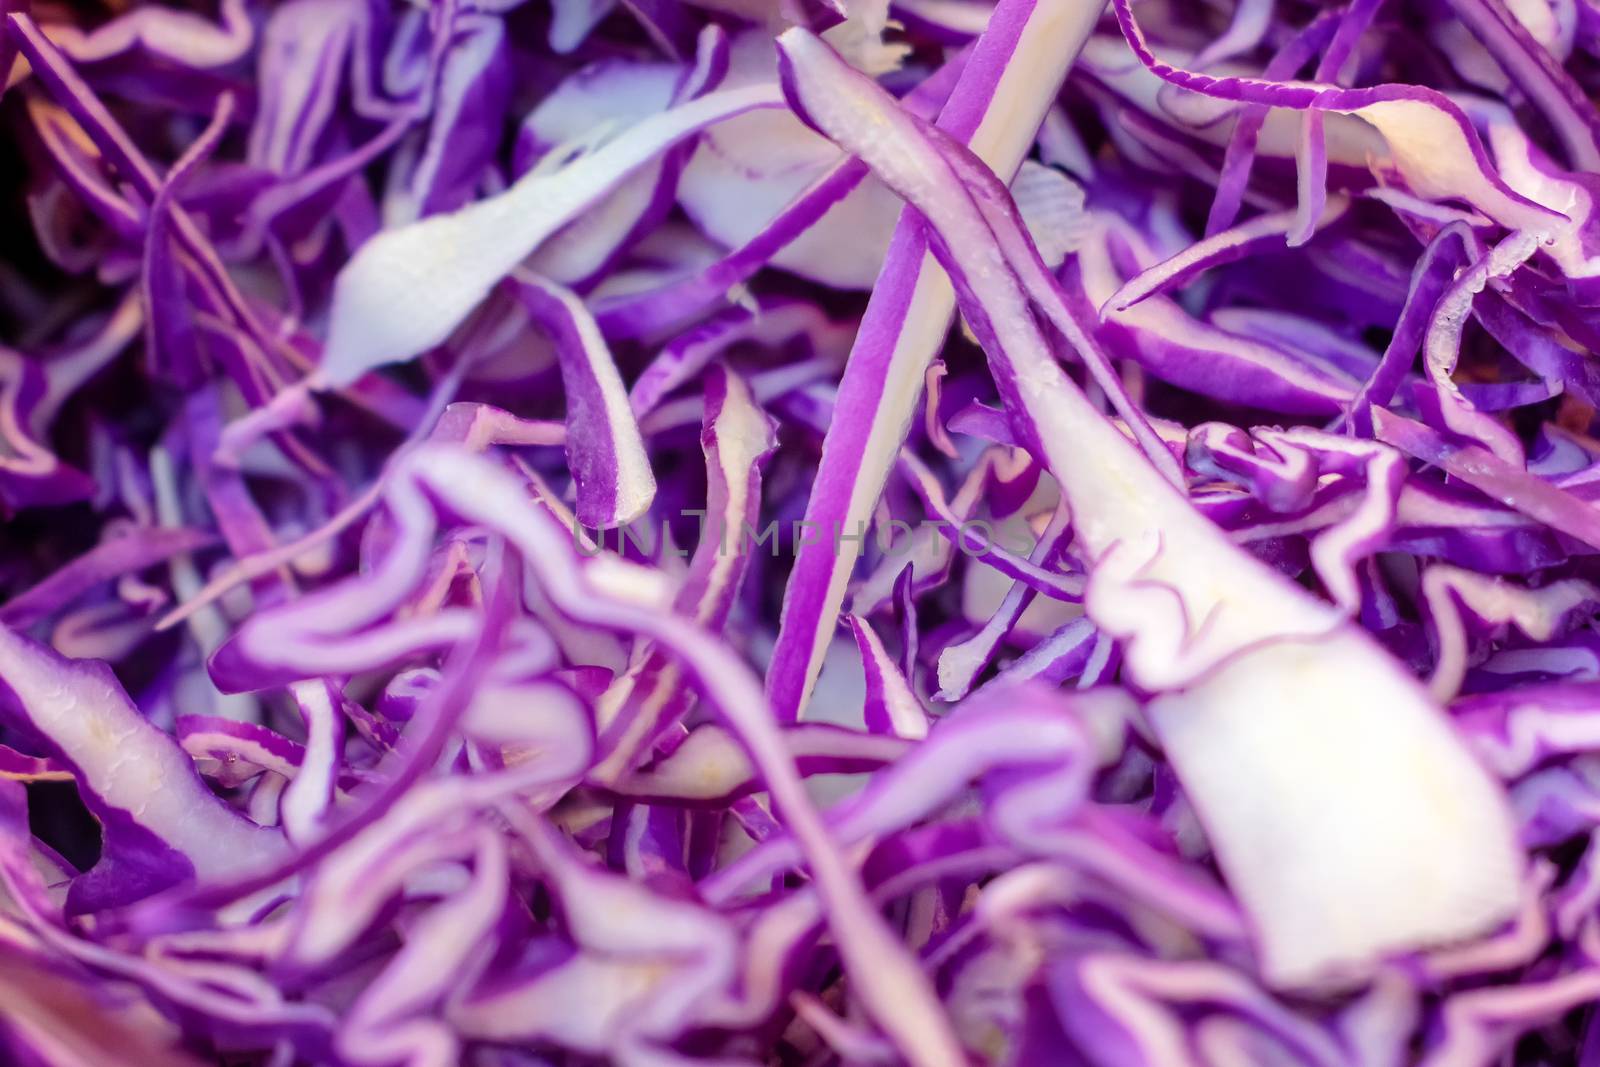 Fresh Shredded Purple Cabbage Ready in a Salad Bar. by seika_chujo